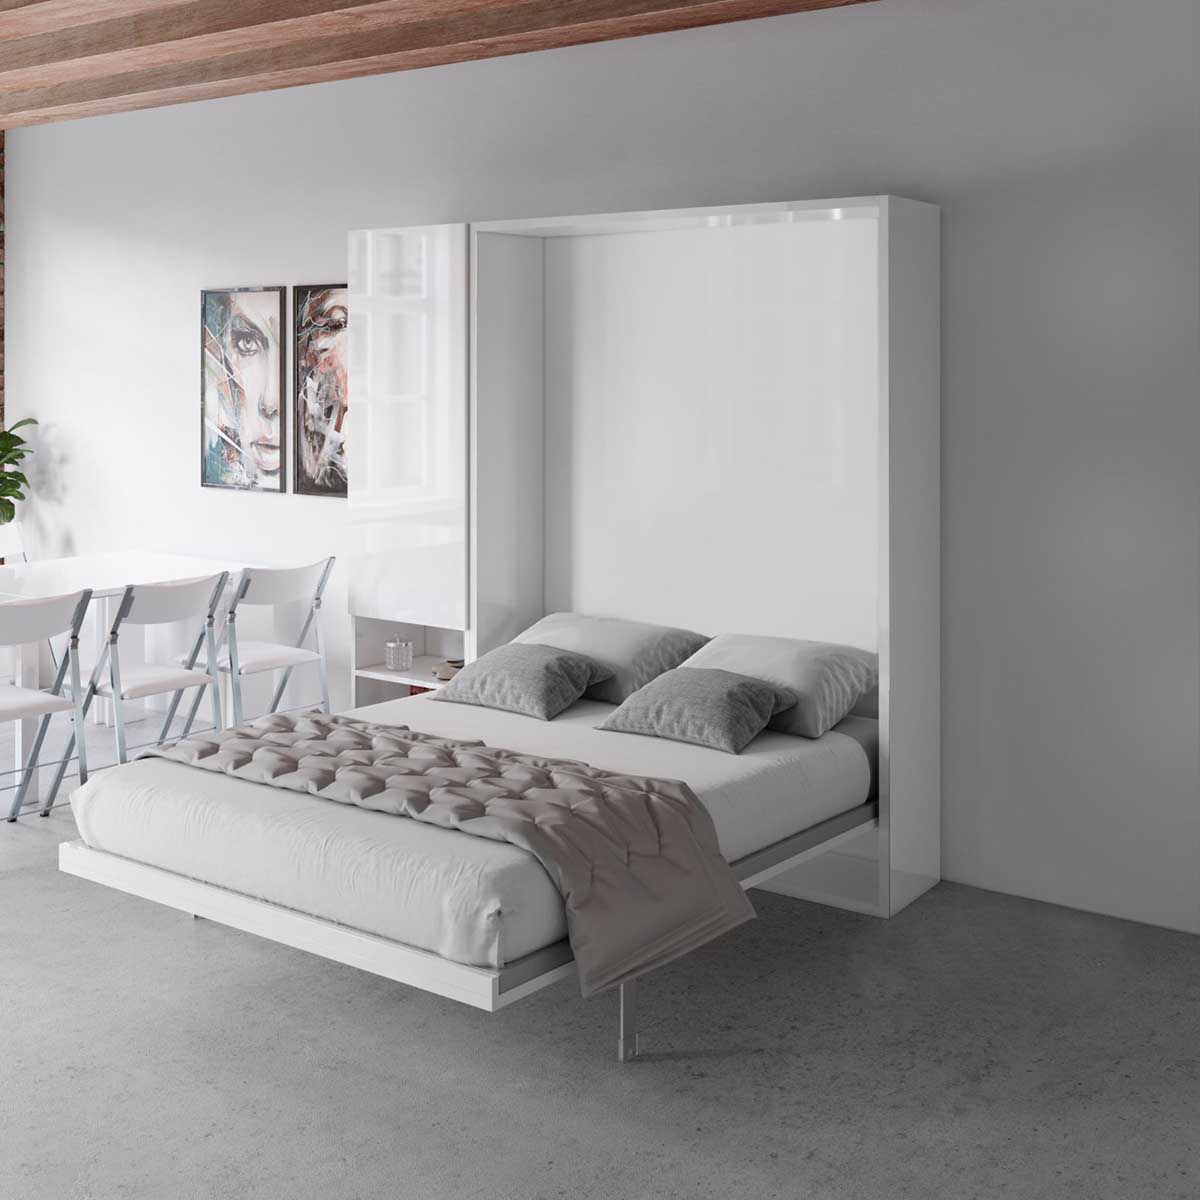 تخت خواب تاشو سفید مینیمال چوبی دو نفره